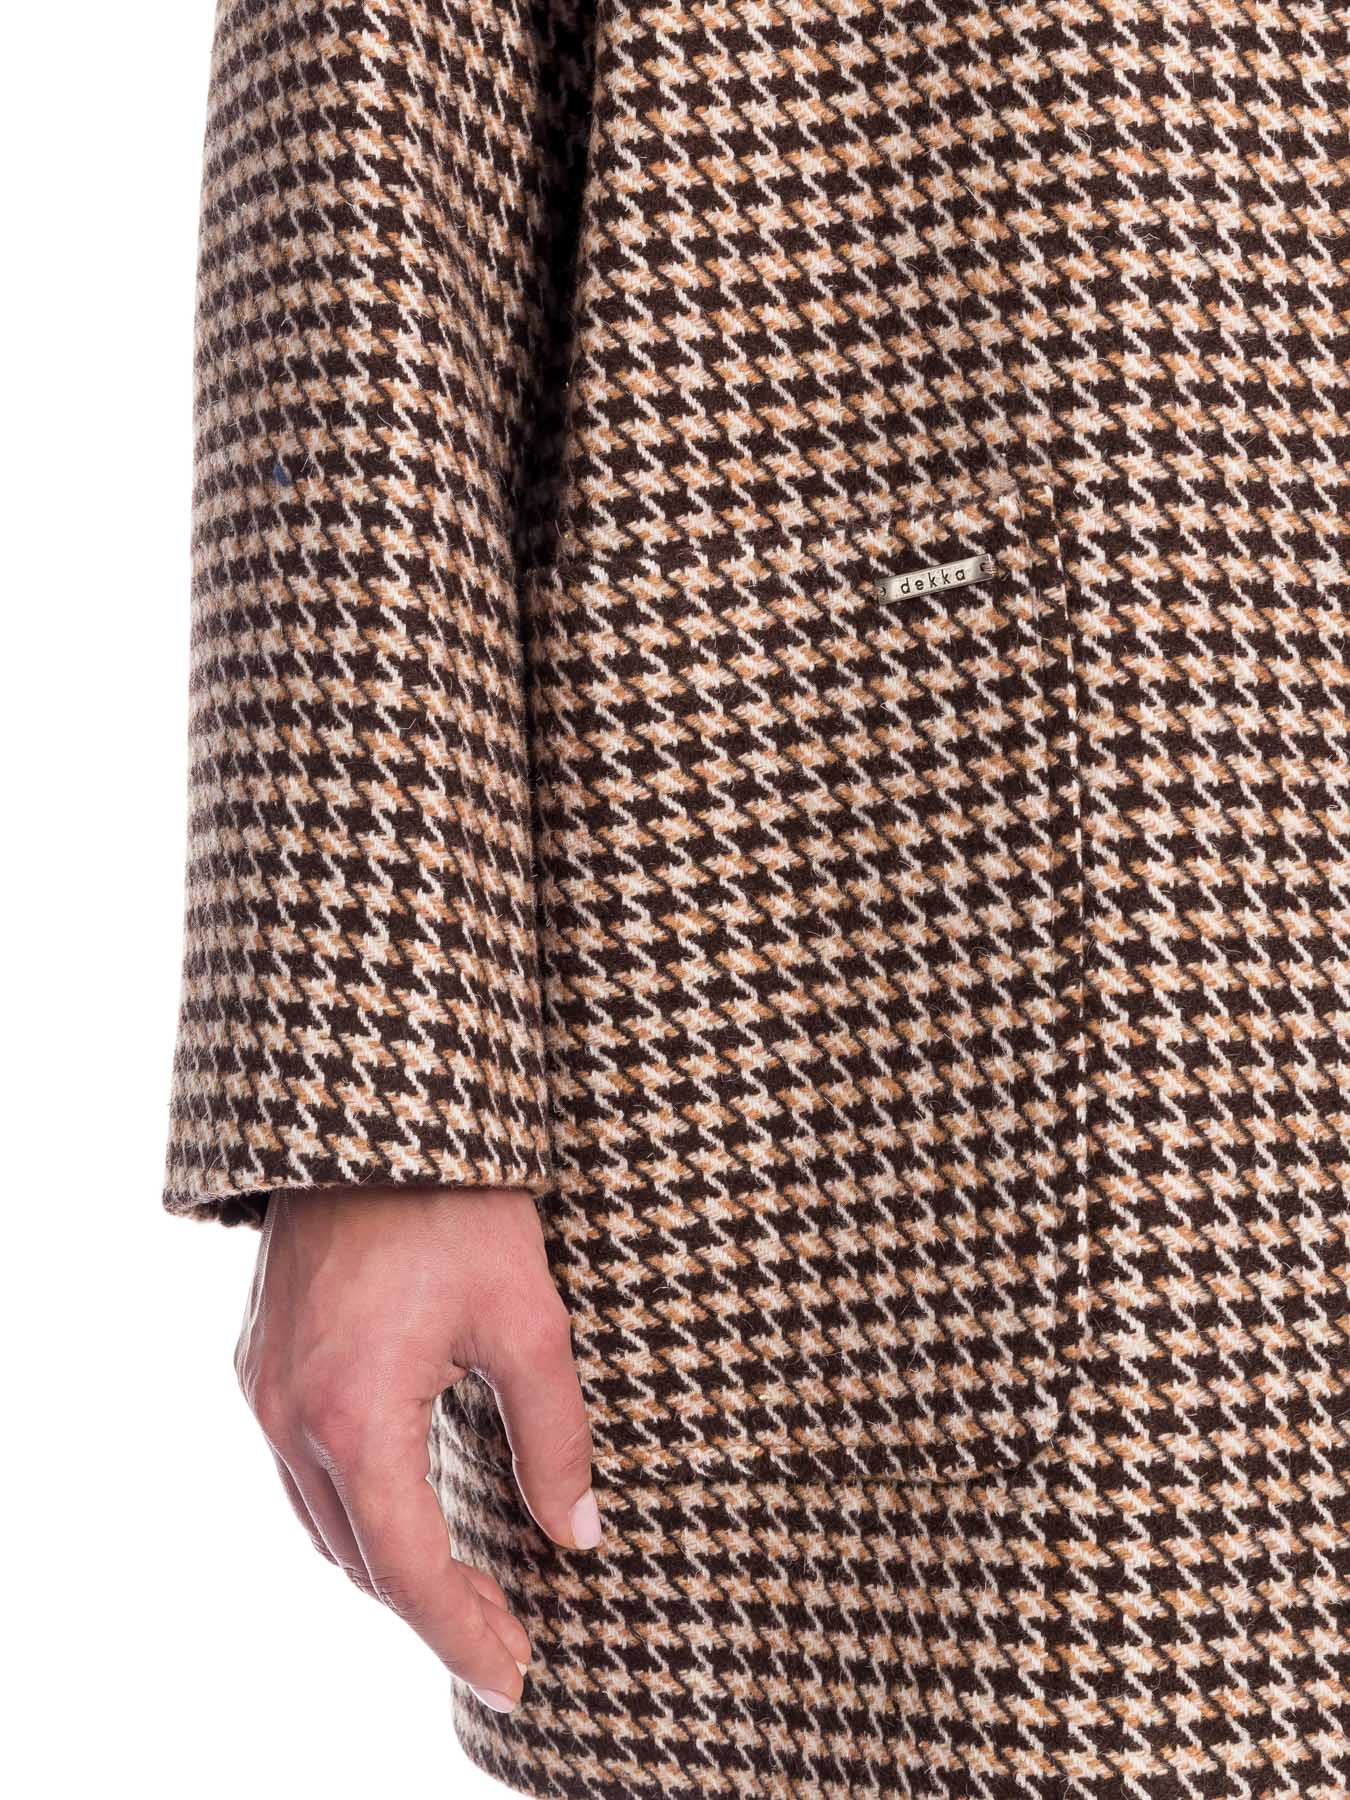 Демисезонное женское пальто из шерсти с воротником-стойкой